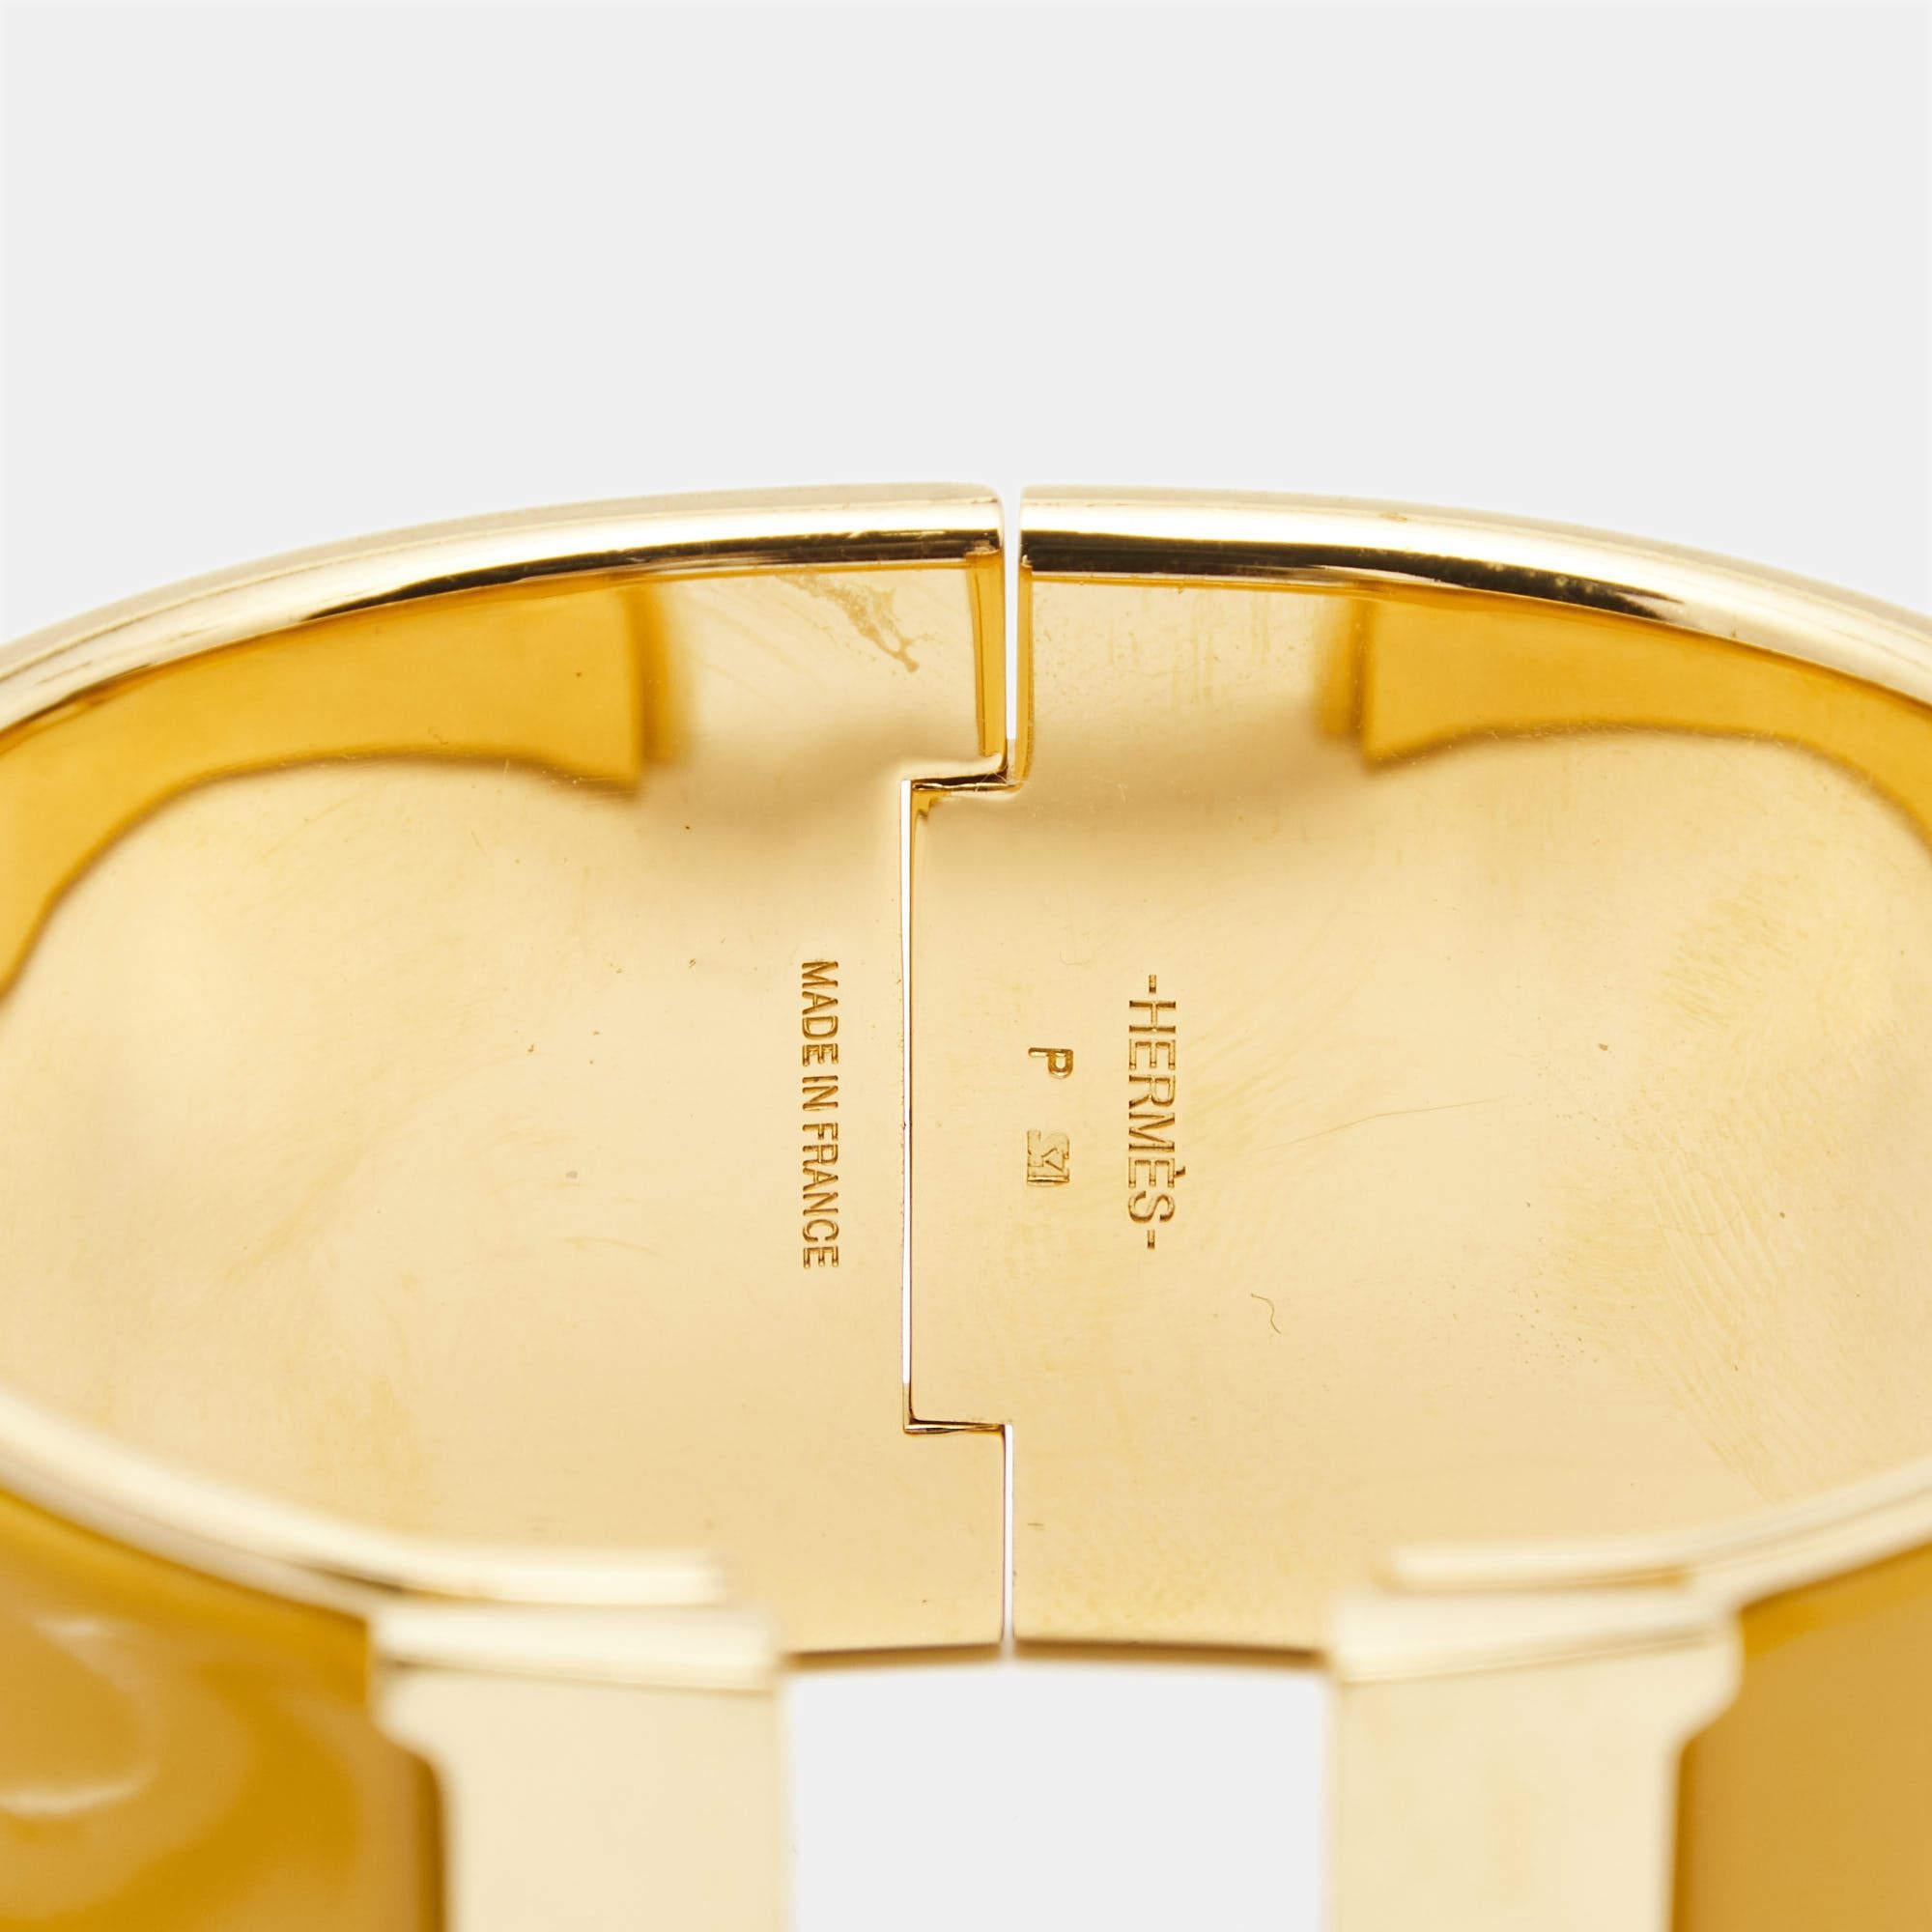 Ultra-moderne et chic, ce bracelet Hermès s'inscrit dans la tendance contemporaine. Le design Lux est agrémenté d'éléments distincts qui confèrent à la création une touche de classe. Cette douce pièce sera du plus bel effet lorsqu'elle sera associée